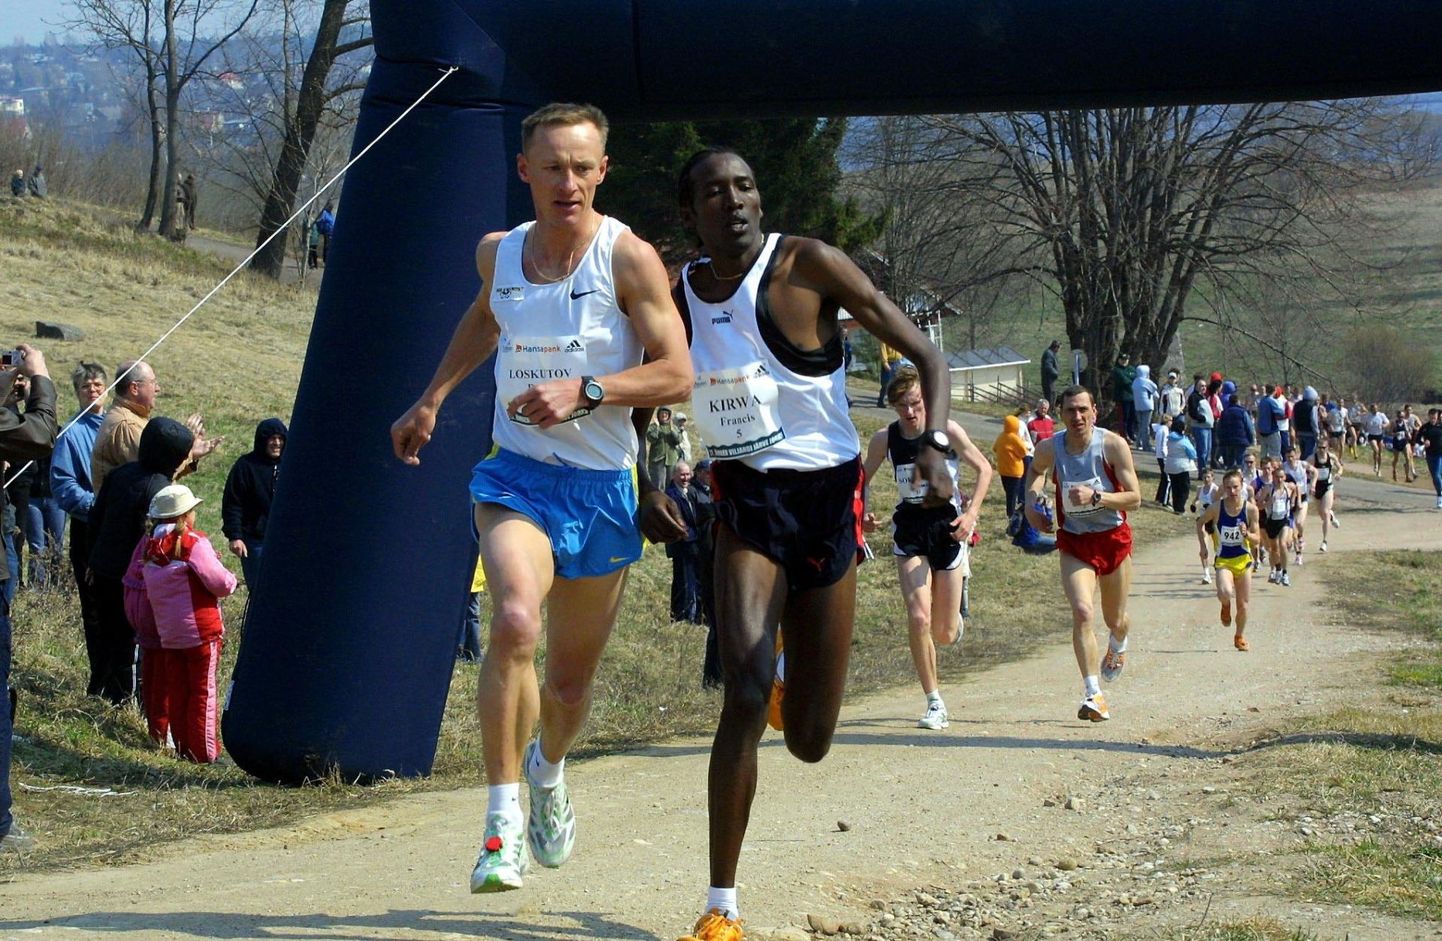 Keenia meeste parim ümber Viljandi järve jooksu aeg pärineb 2006. aastast ja on Francis Kirwa (paremal) nimel. Ometi ei andnud see talle võitu, sest Pavel Loskuotv oli temast 12 sekundit kiirem.